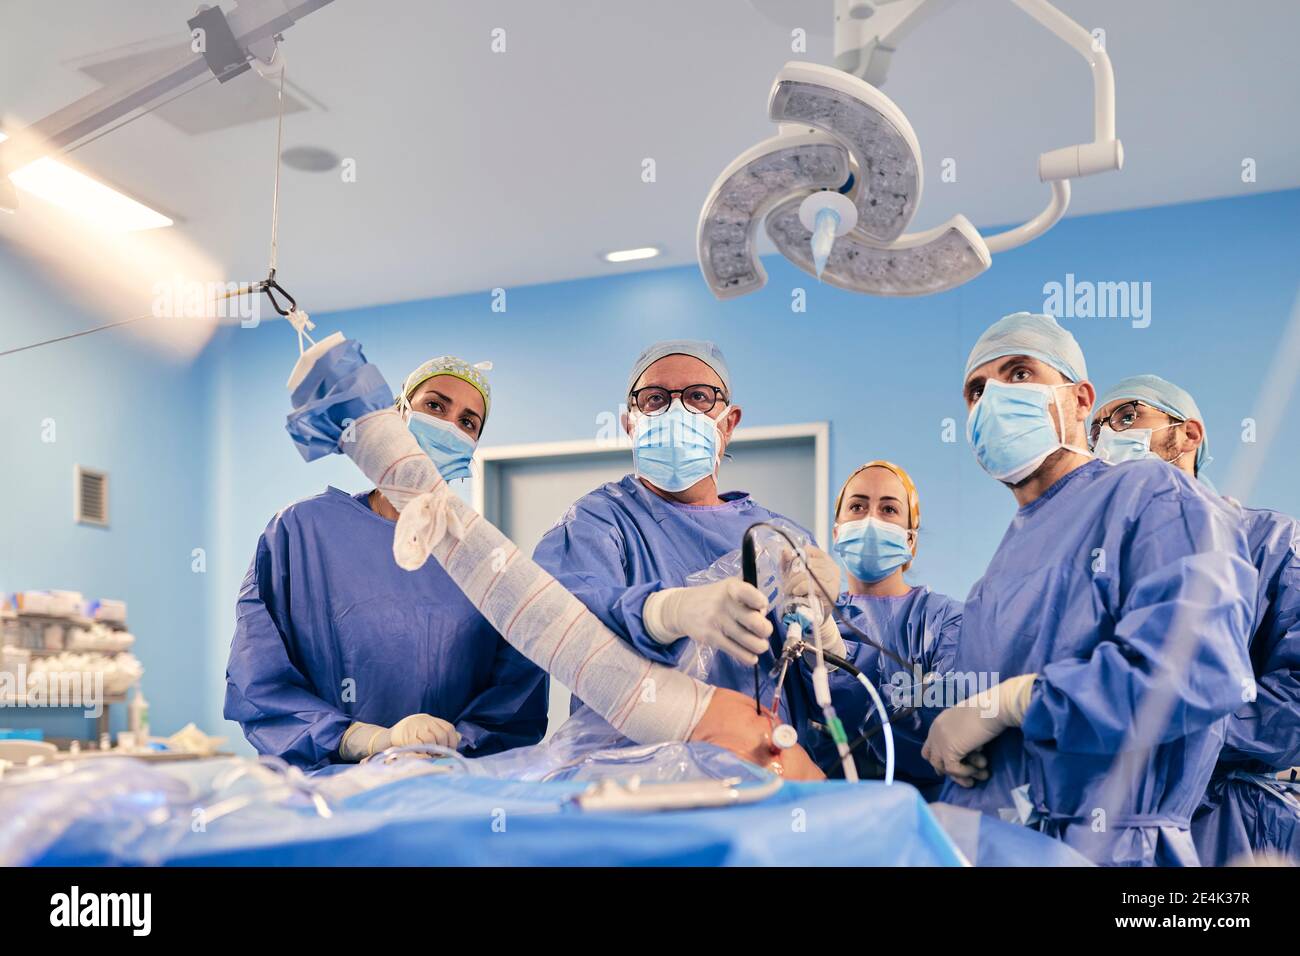 Chirurghi con maschera facciale che operano chirurgia artroscopica della spalla mentre si è in piedi In sala operatoria durante il COVID-19 Foto Stock